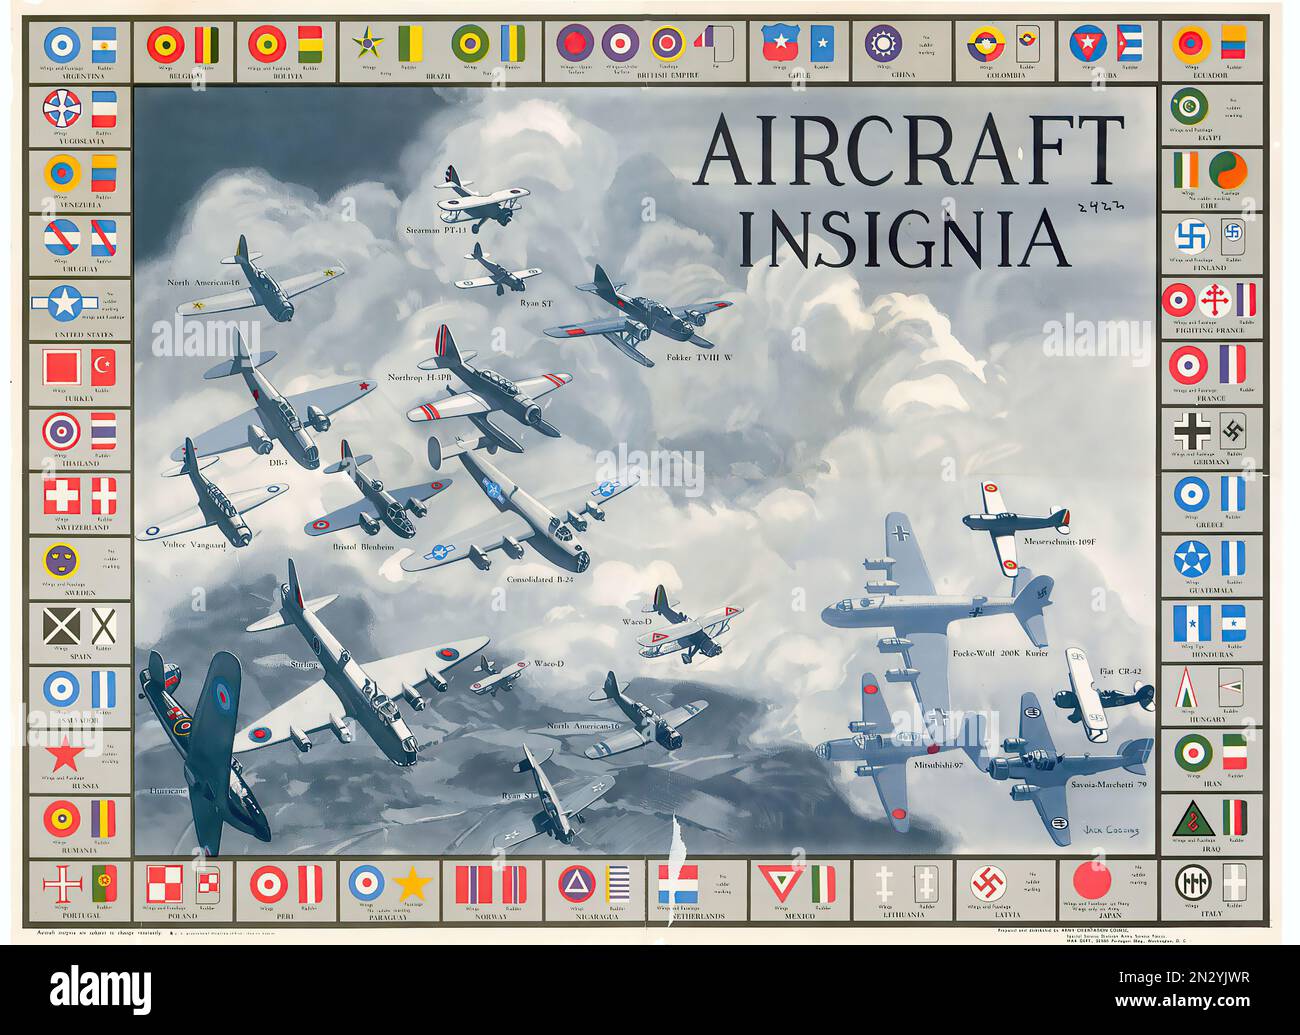 1944 Insignia velivolo! - Seconda guerra mondiale - Poster di propaganda degli Stati Uniti Foto Stock